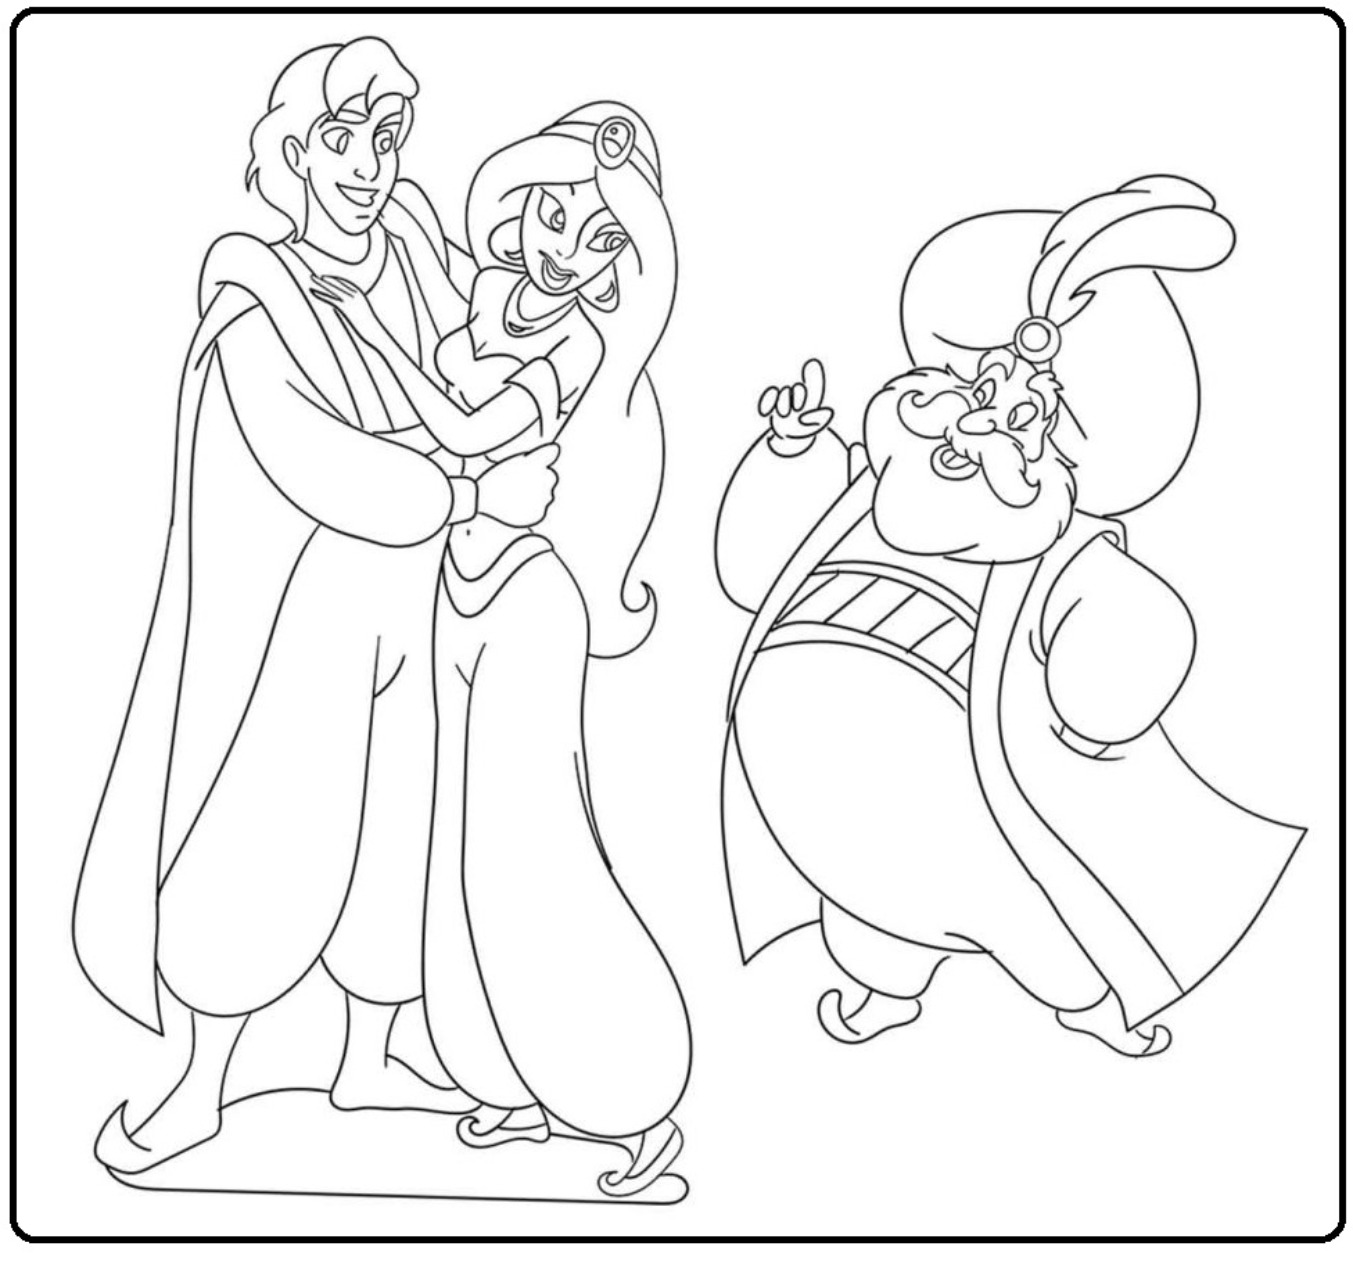 Printable Princess JAsmine and Prince Aladdin Coloring Page for kids.